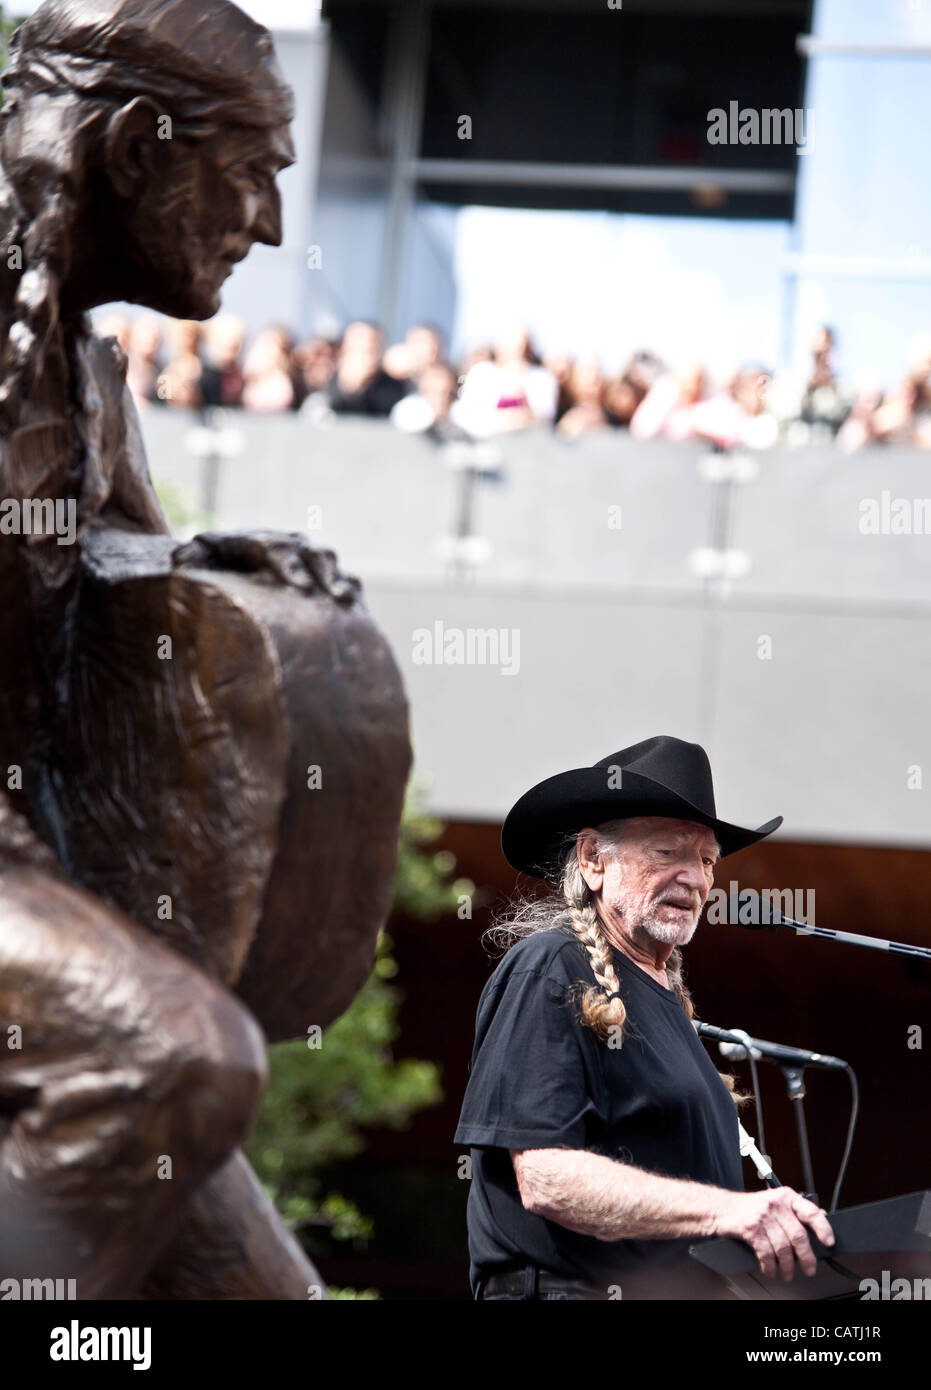 20 avril 2012, Austin, TX. Willie Nelson assiste à l'inauguration de sa nouvelle statue à Austin. Banque D'Images